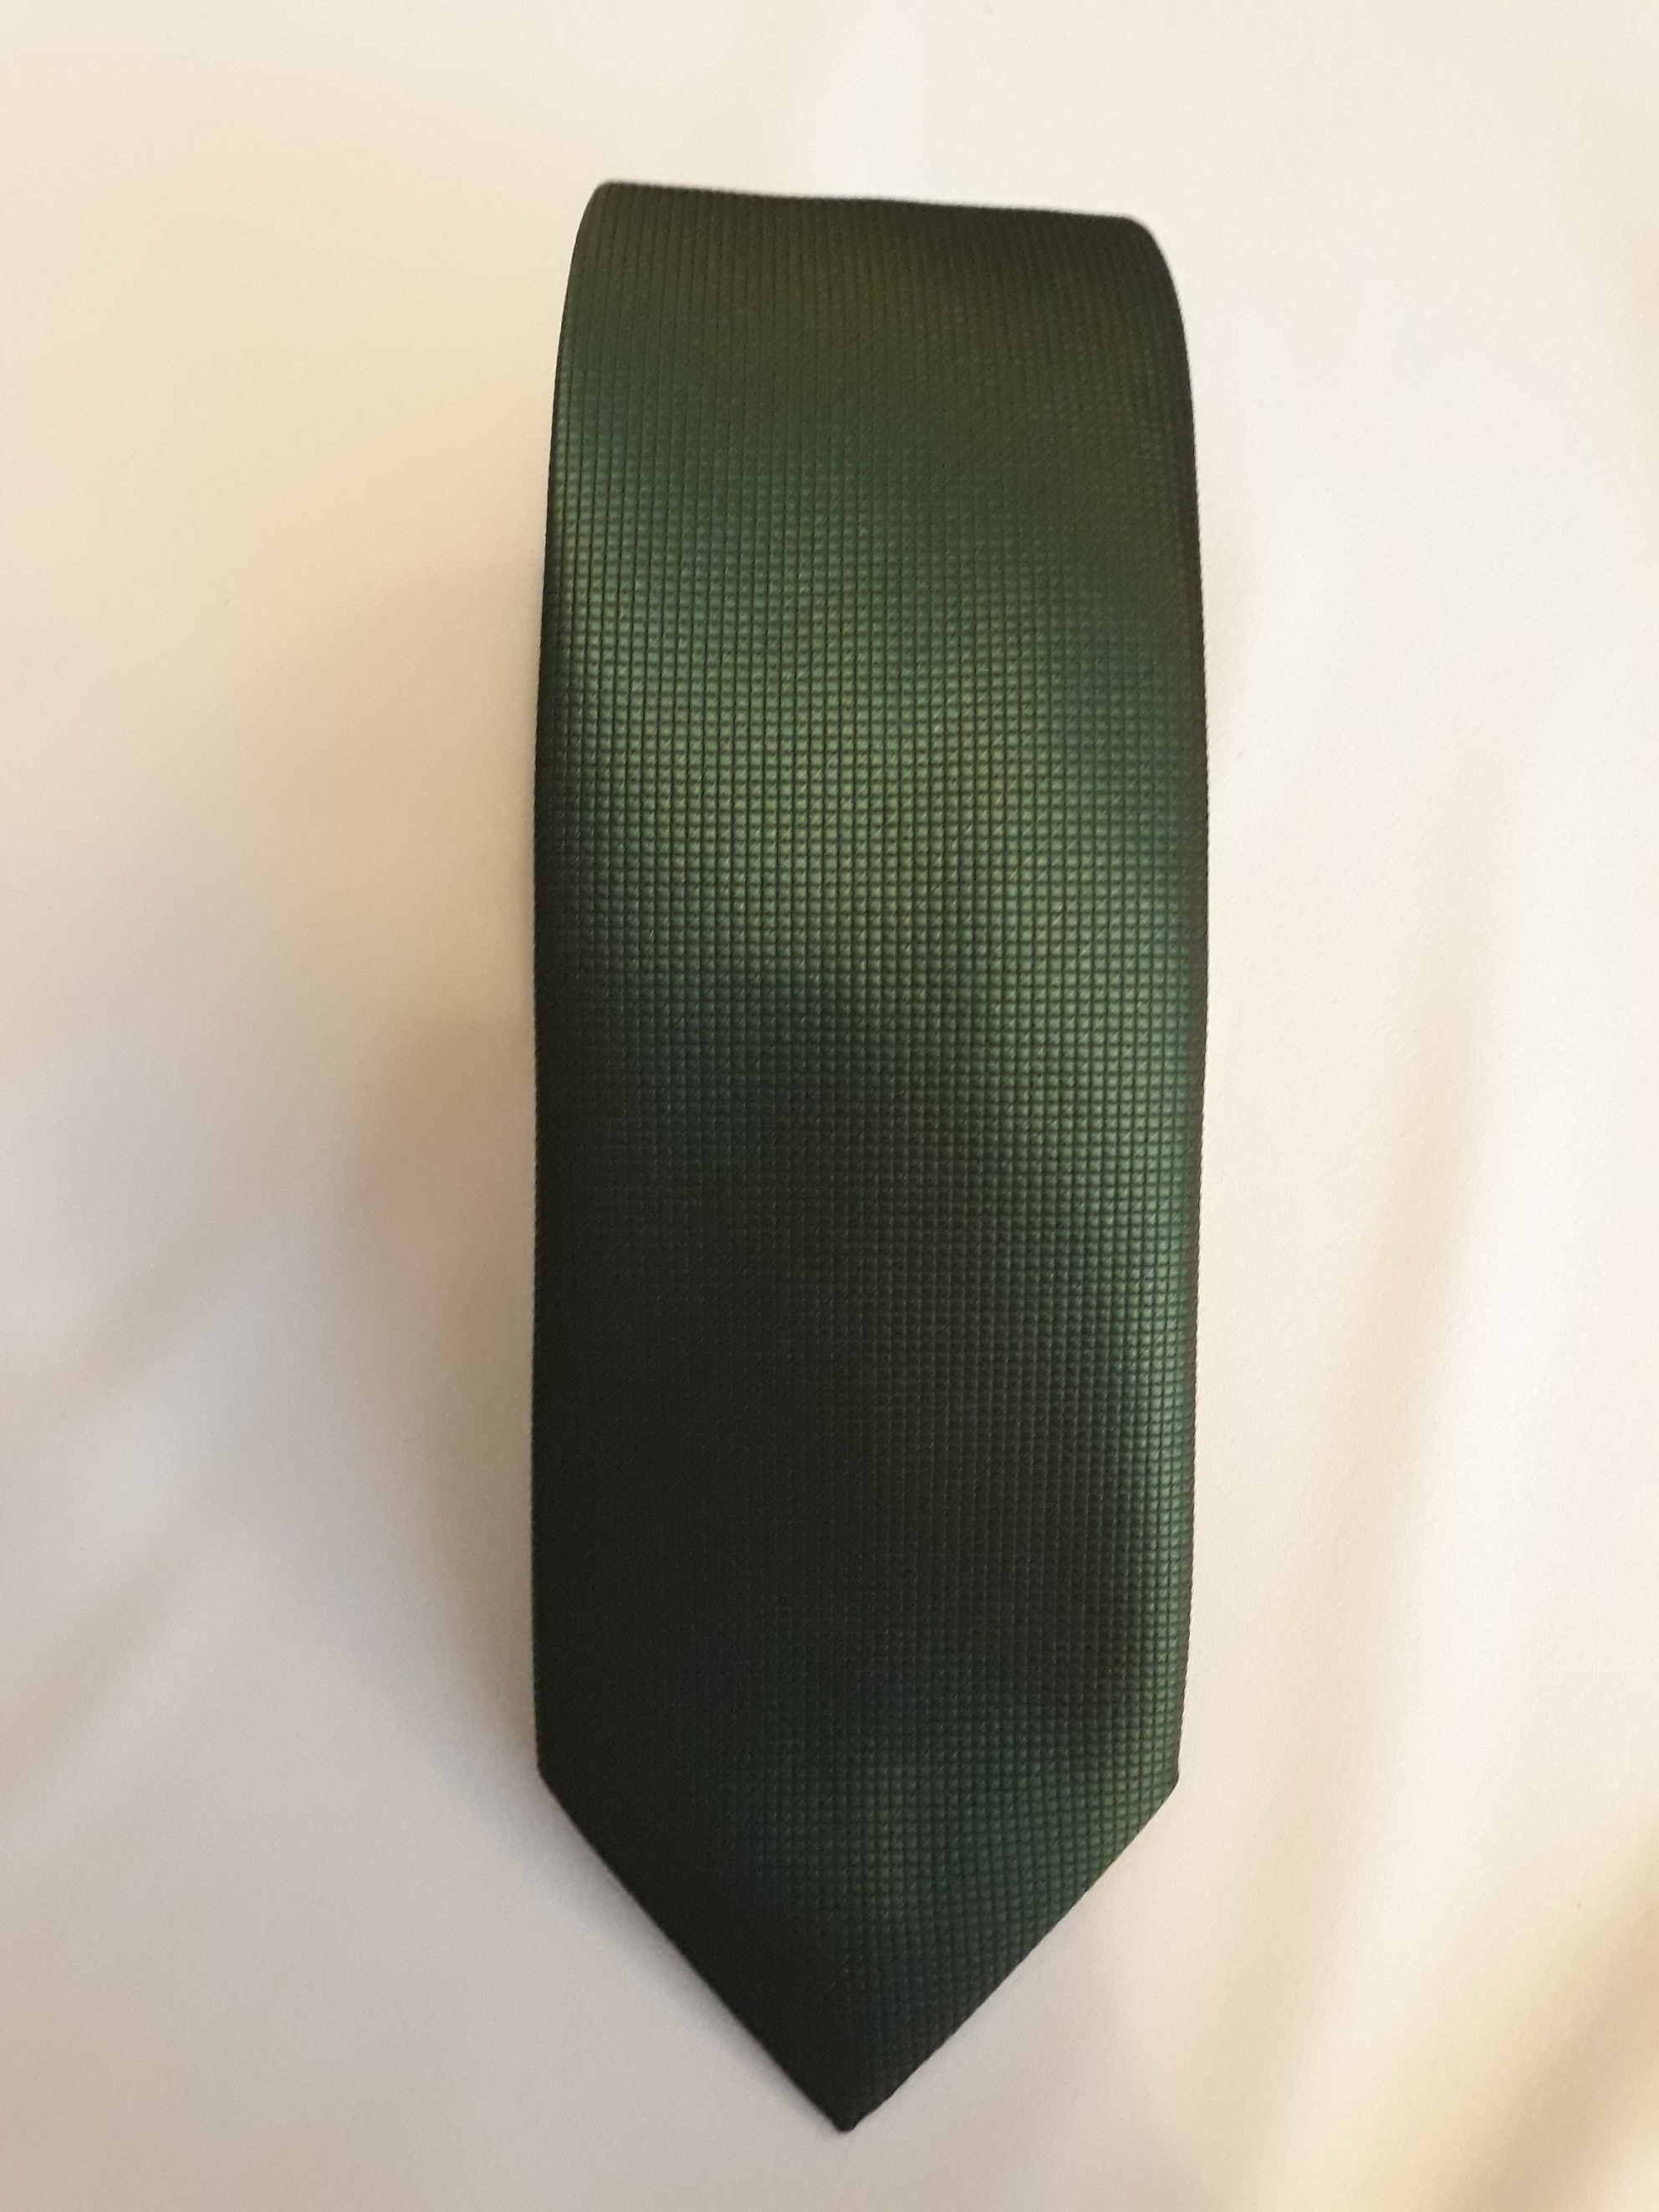 Pierre Cardin kravat.Koyu yesil.Orjinal urun.%100 Microfiber.